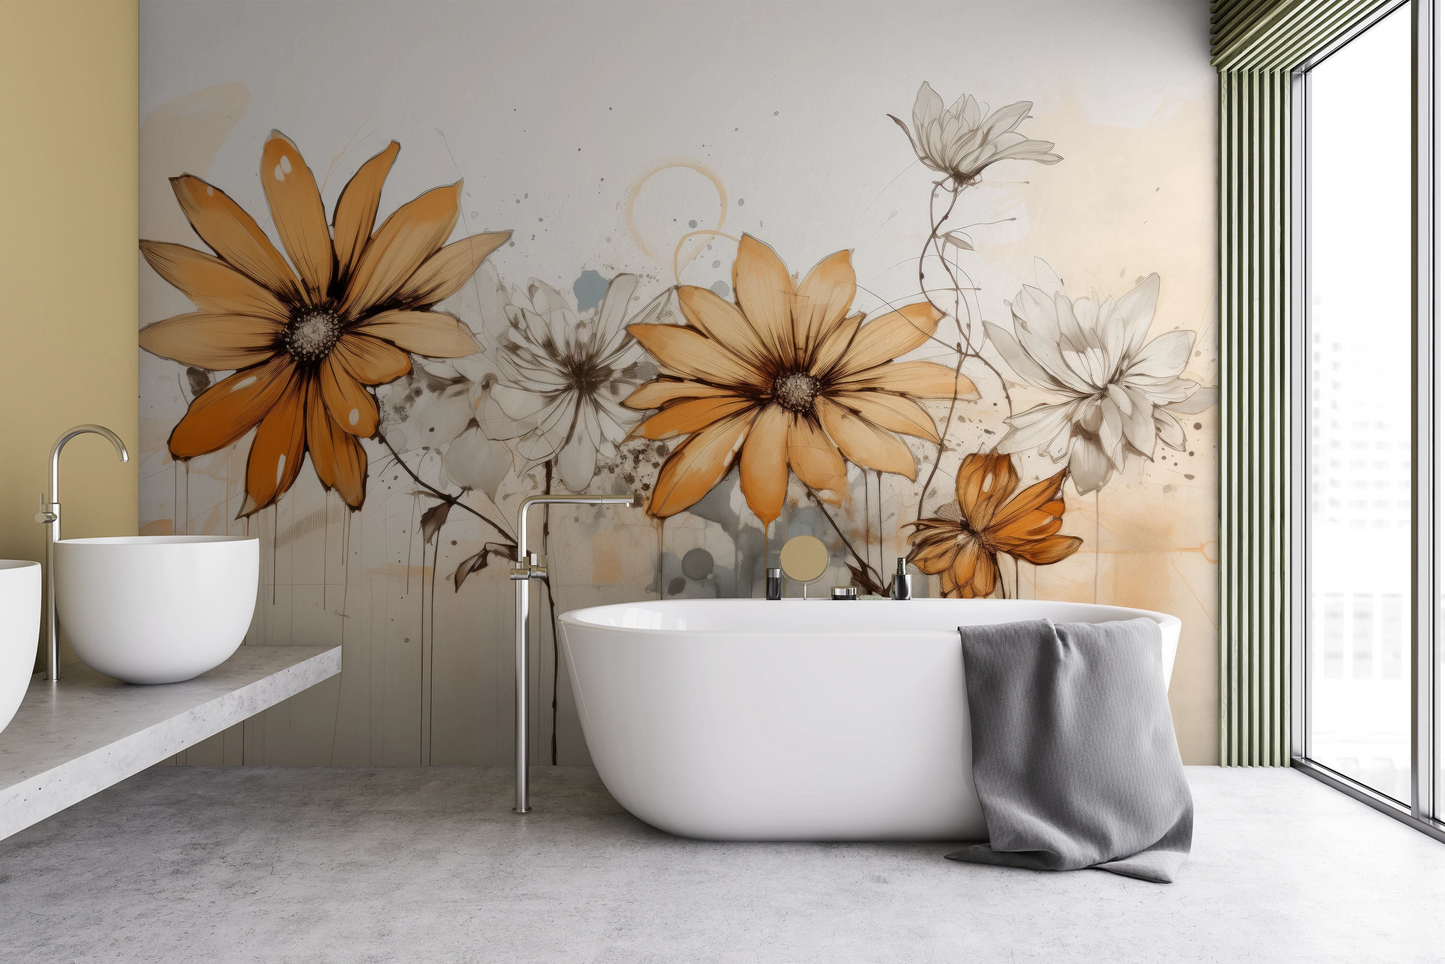 Fototapeta artystyczna o nazwie Abstract Florals pokazana w aranżacji wnętrza.